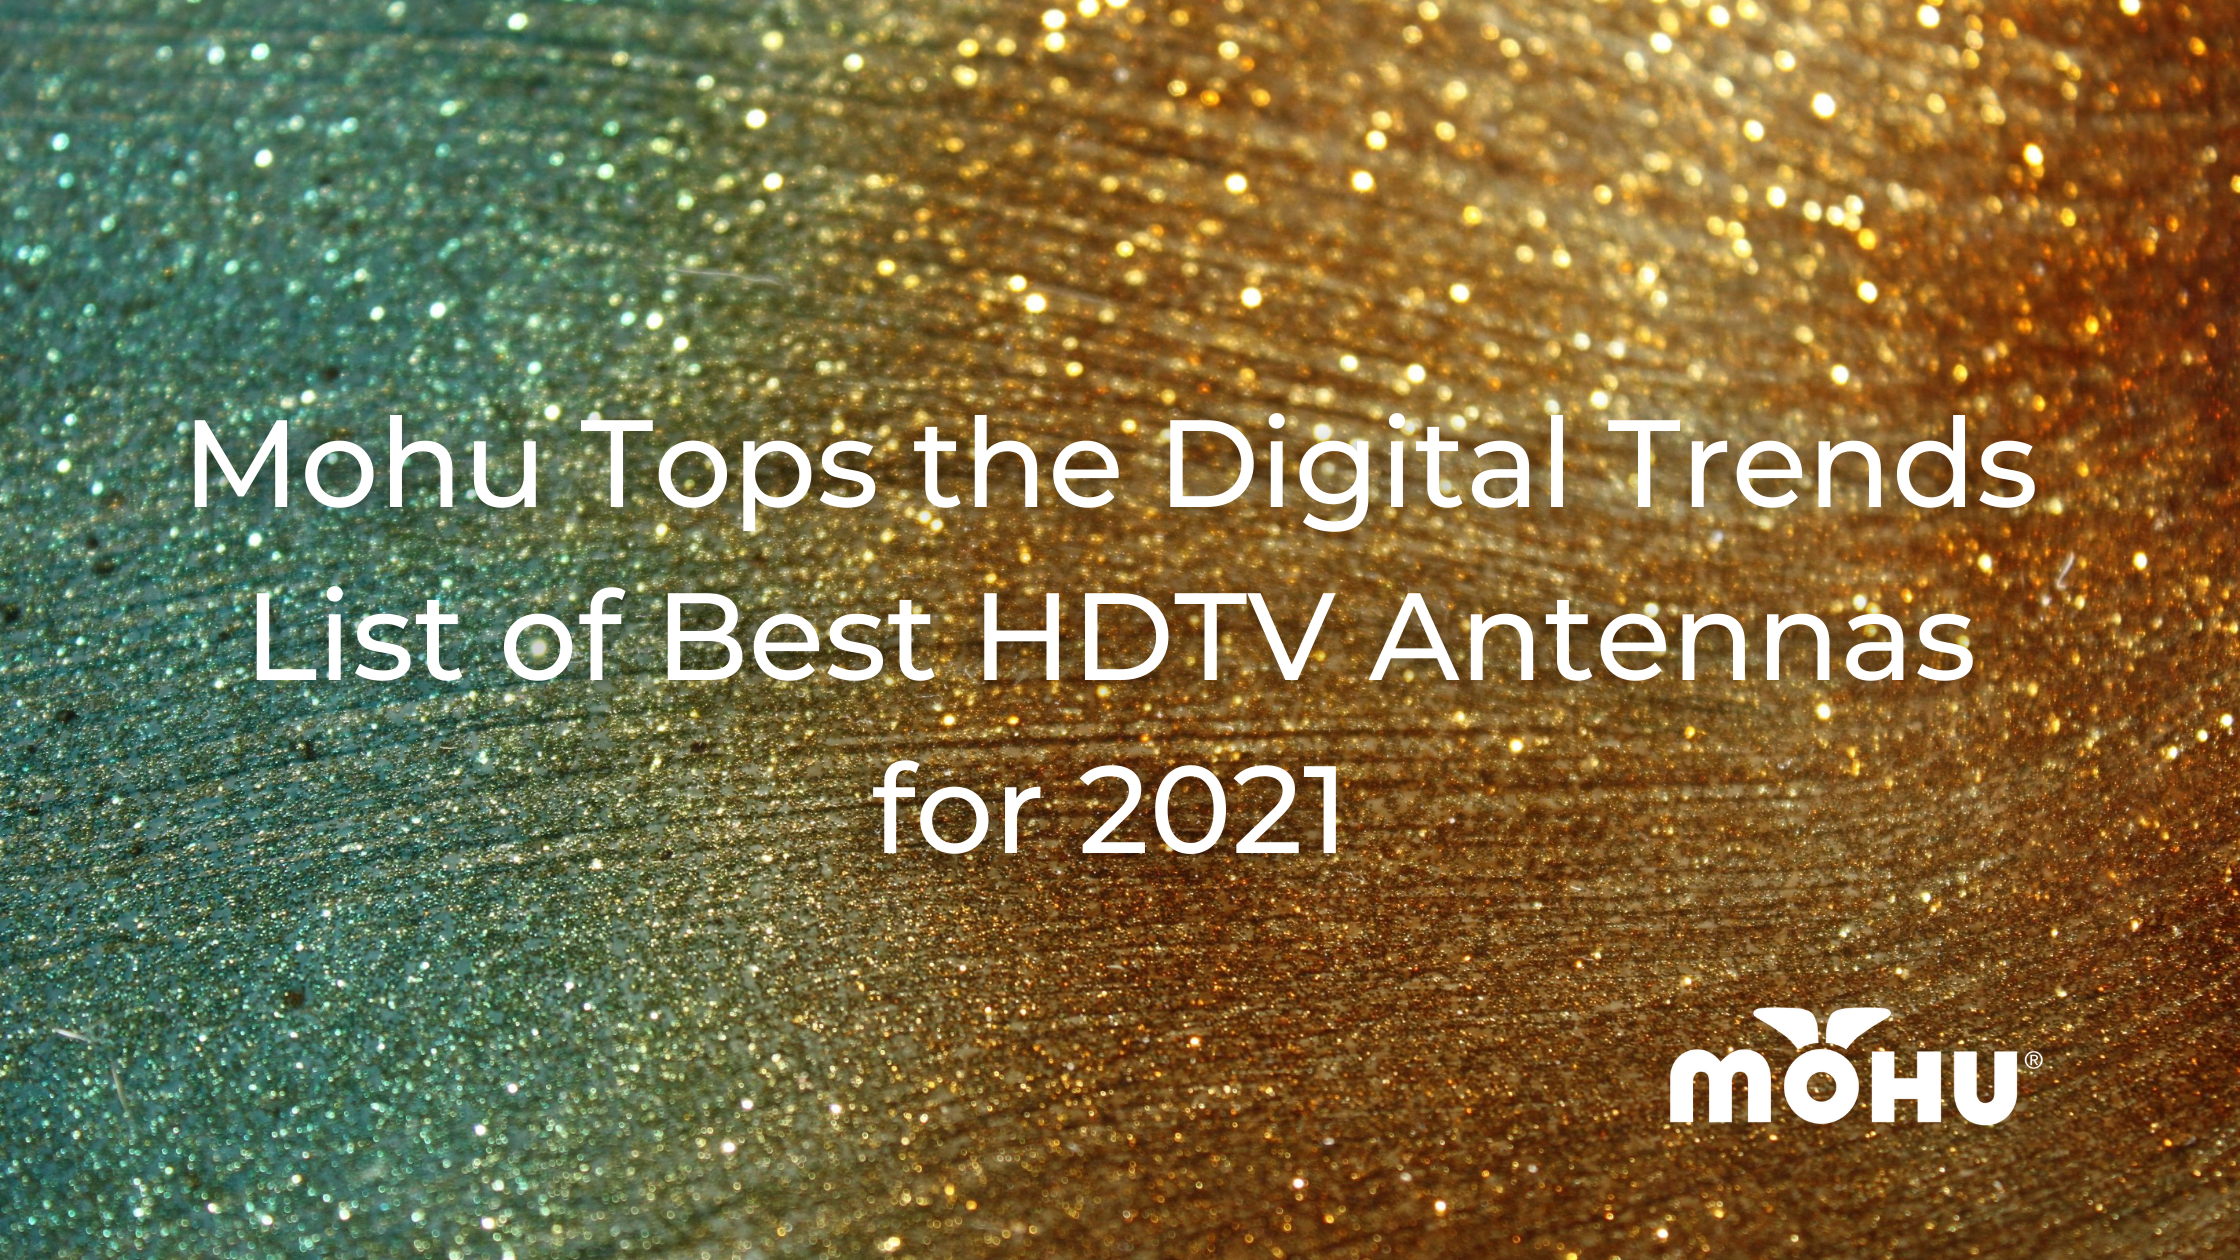 Mohu Tops the Digital Trends List of Best HDTV Antennas for 2021